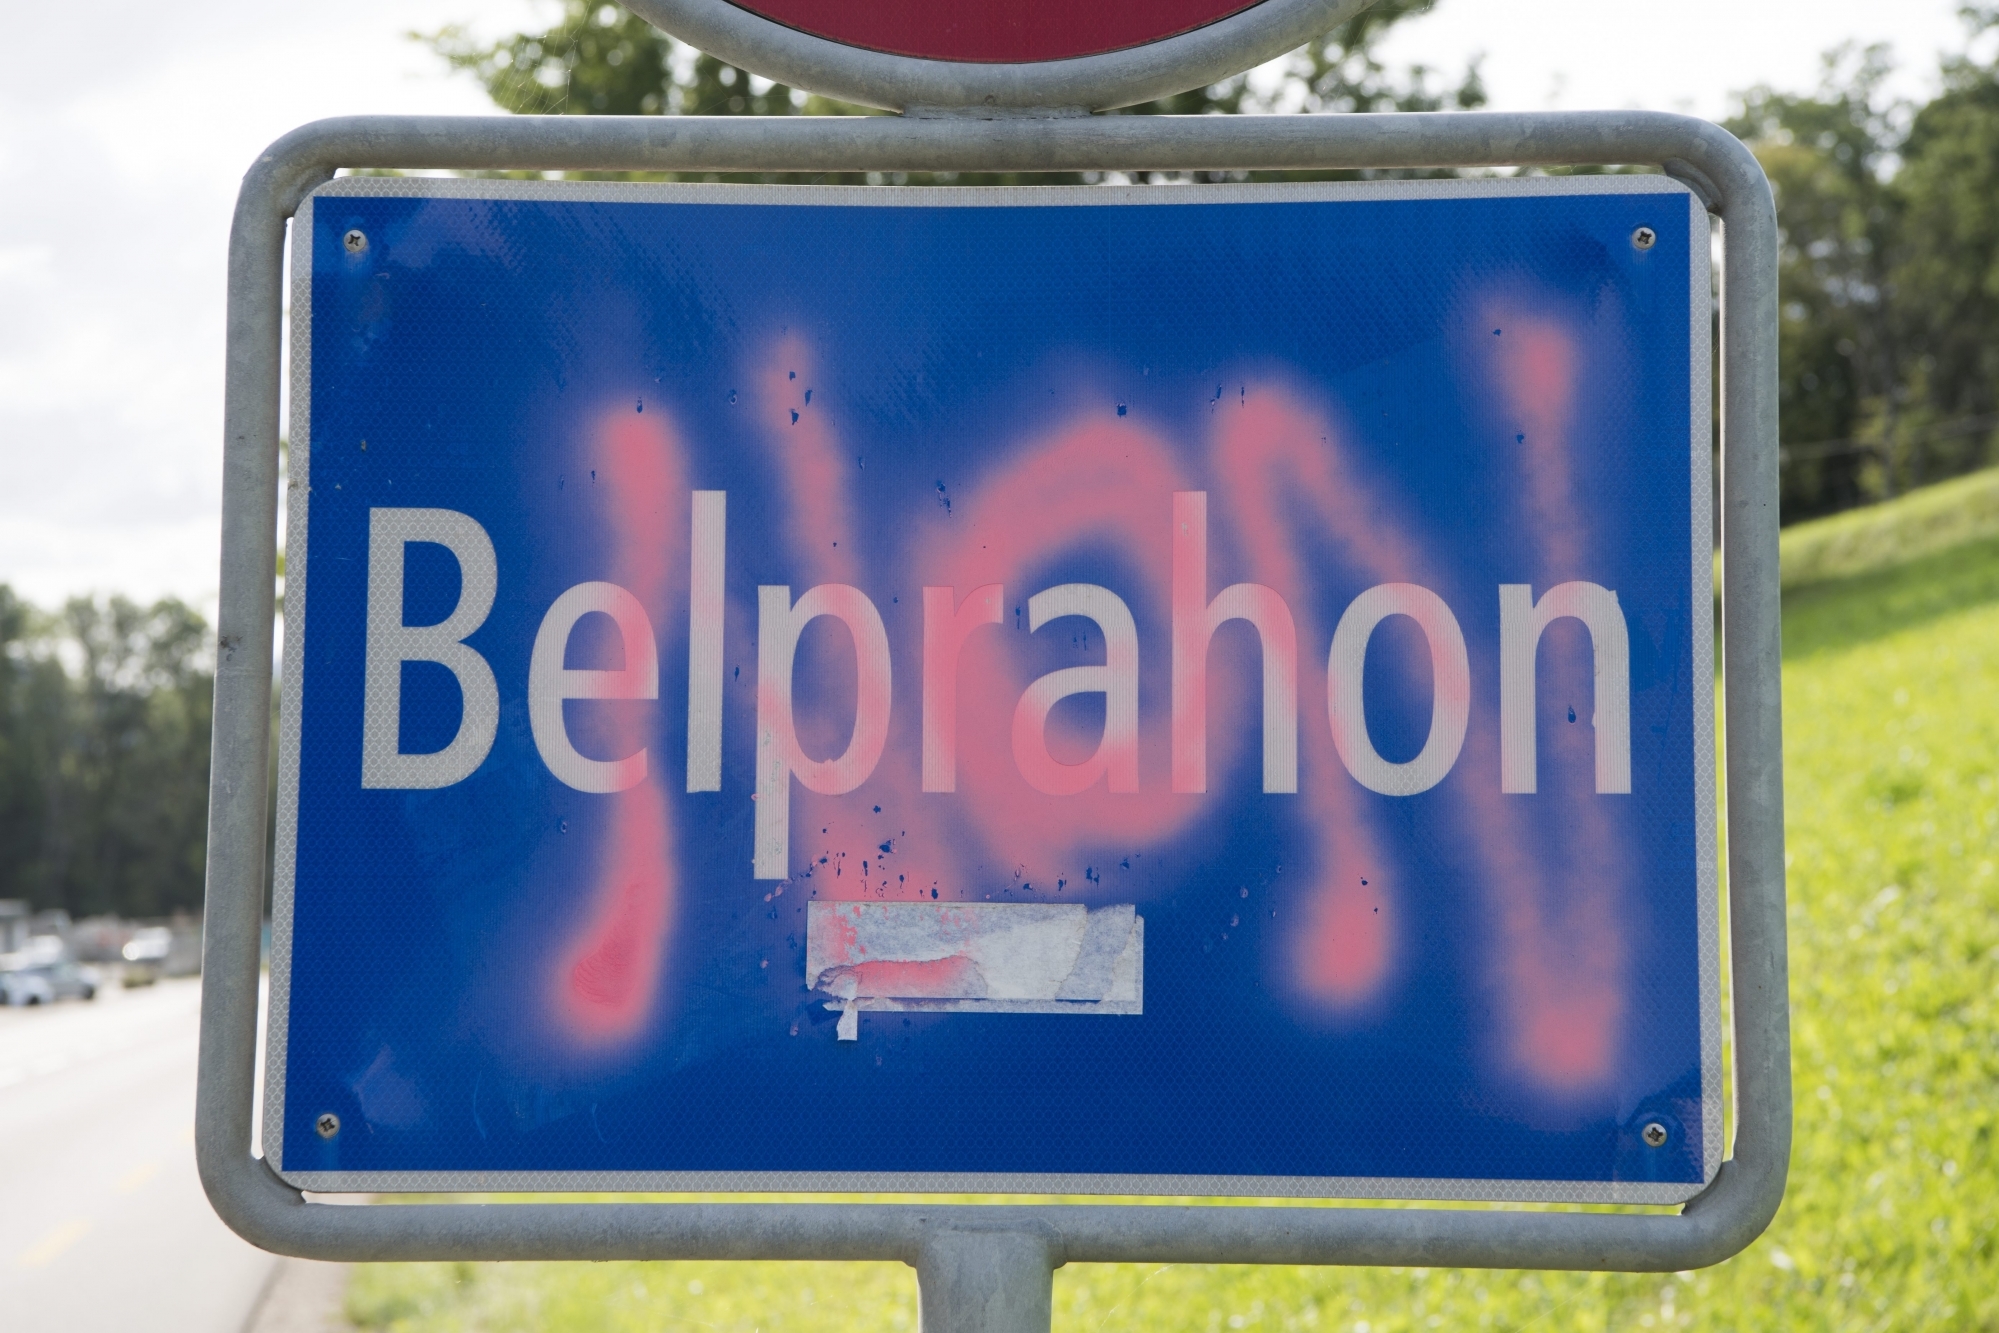 Les citoyens de Belprahon ont choisi le 17 septembre 2017, par sept voix d'écart, de rester dans le canton de Berne